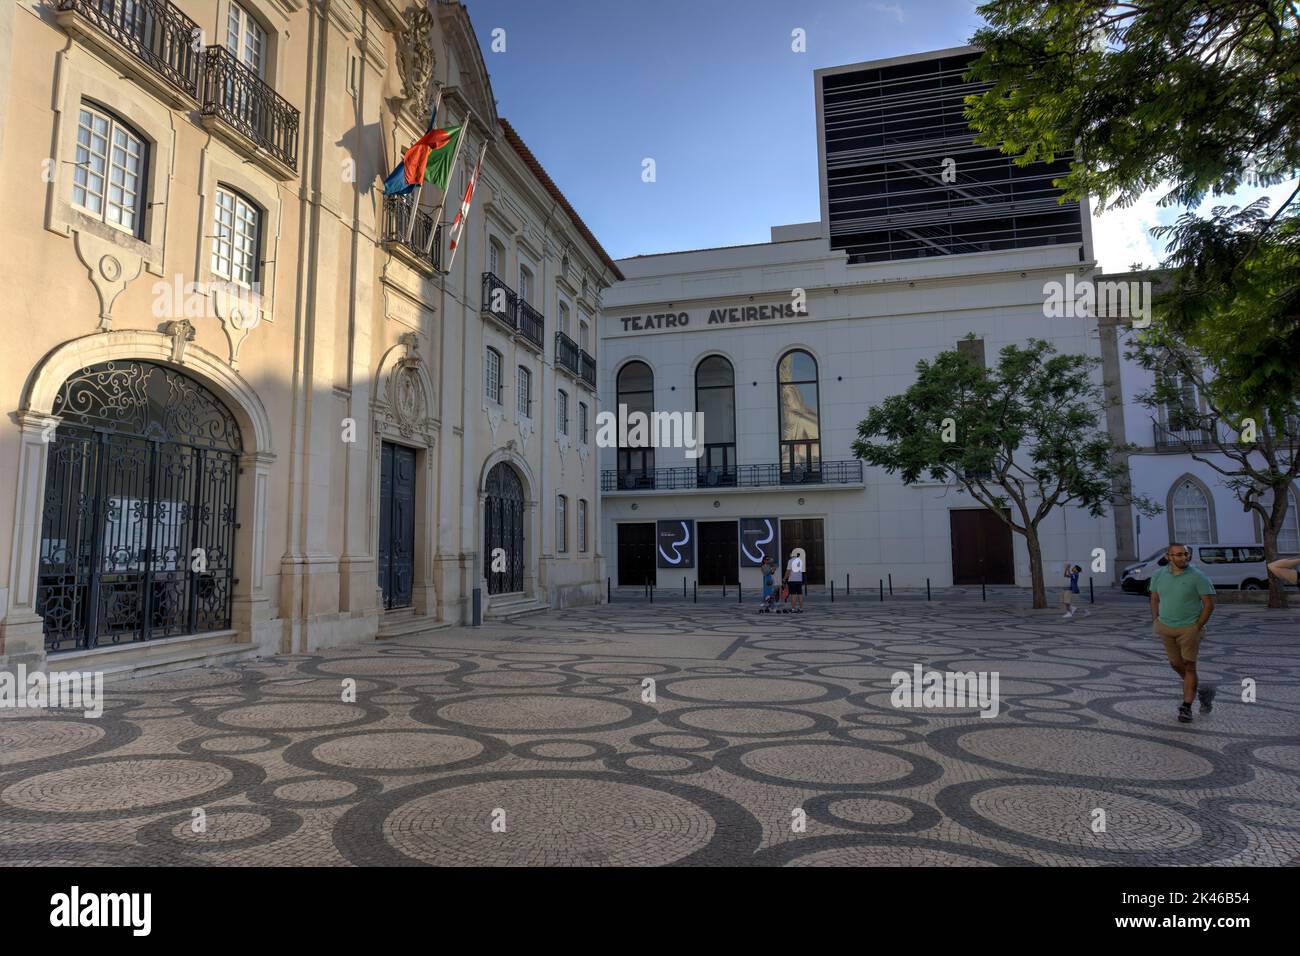 Aveiro, Portugal - 14 août 2022: Théâtre (Teatro) Aveirense situé à côté du bâtiment du conseil de district avec le mouvement piétons flous en premier plan Banque D'Images